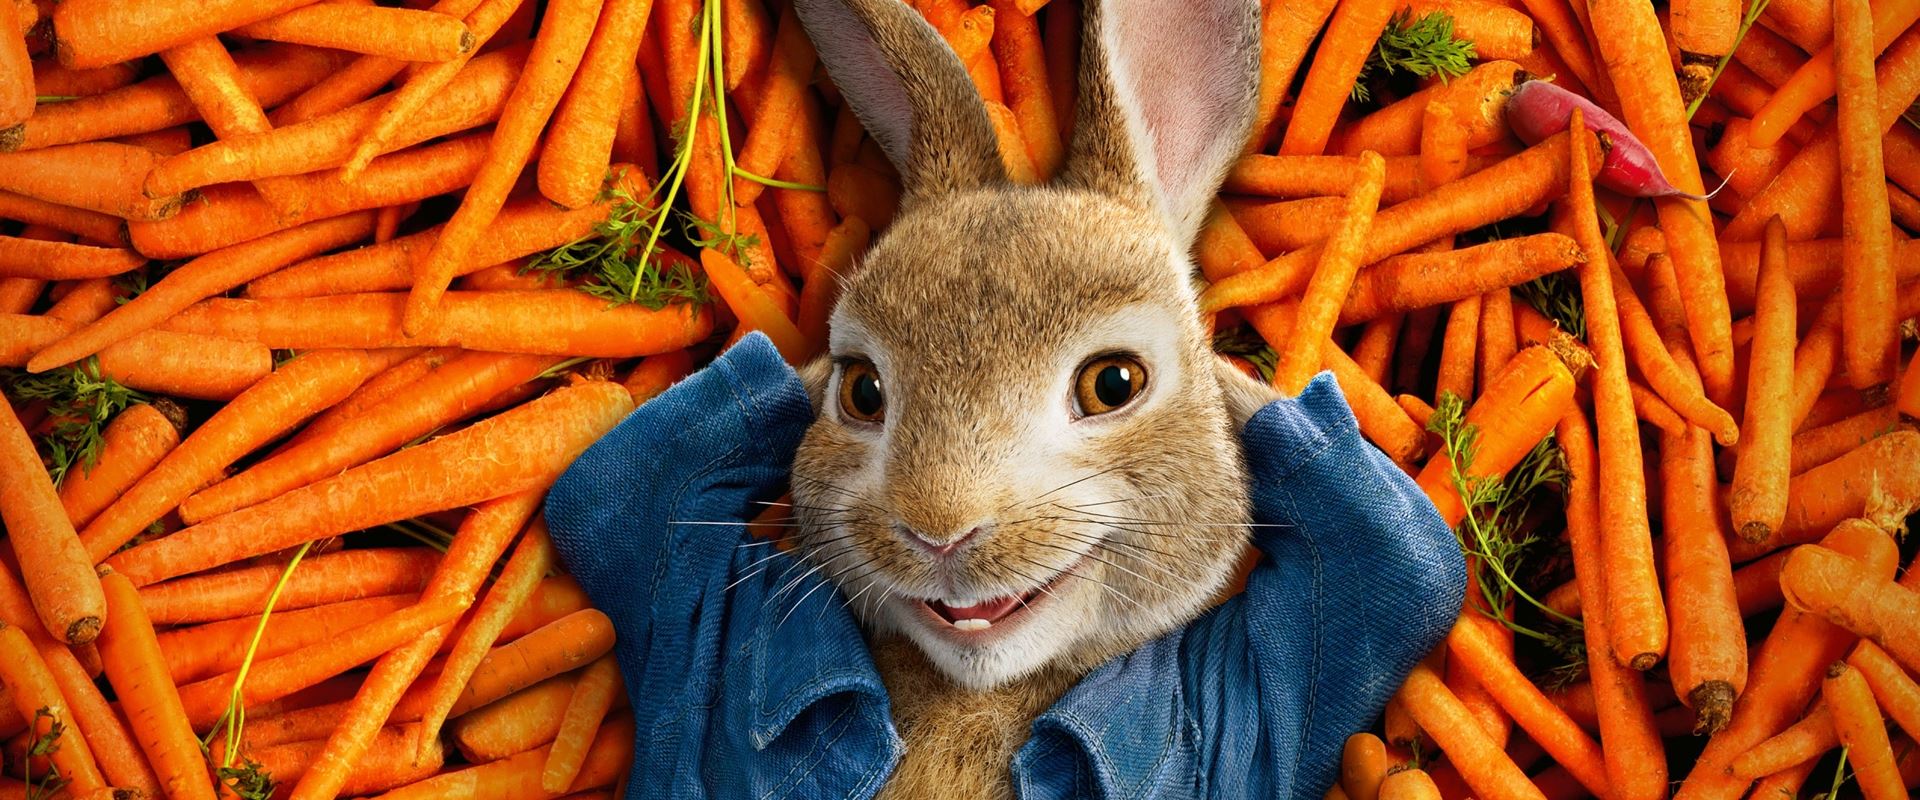 Peter Rabbit – Recensione